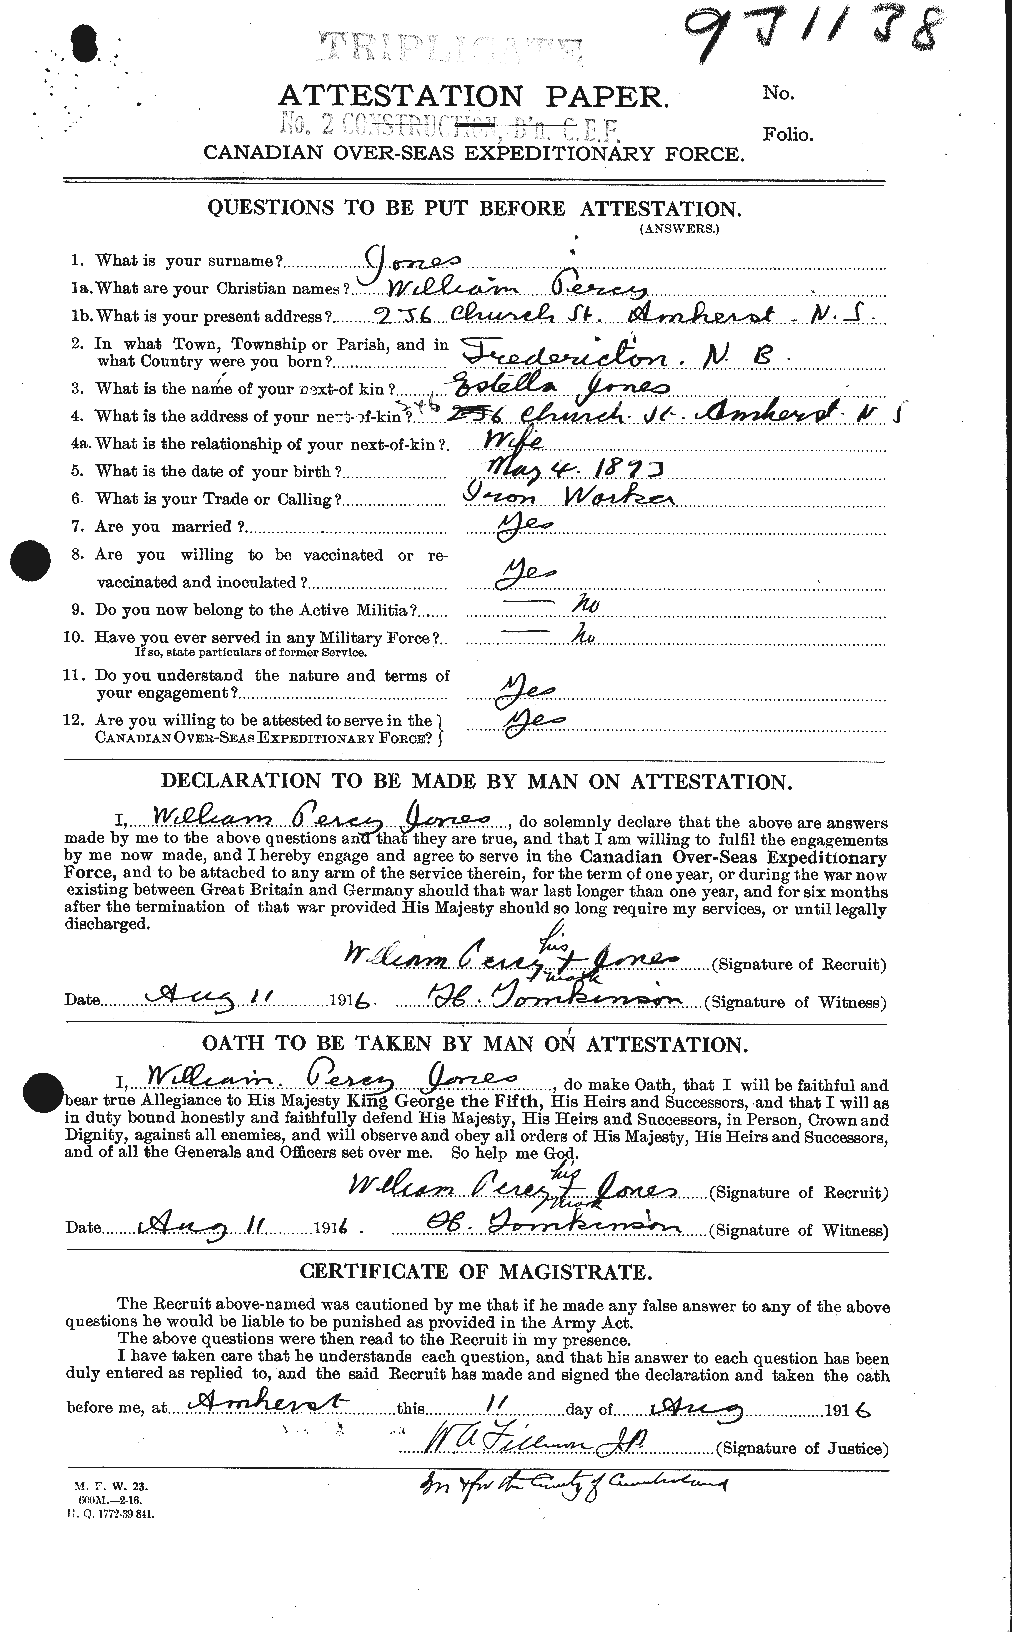 Dossiers du Personnel de la Première Guerre mondiale - CEC 428606a